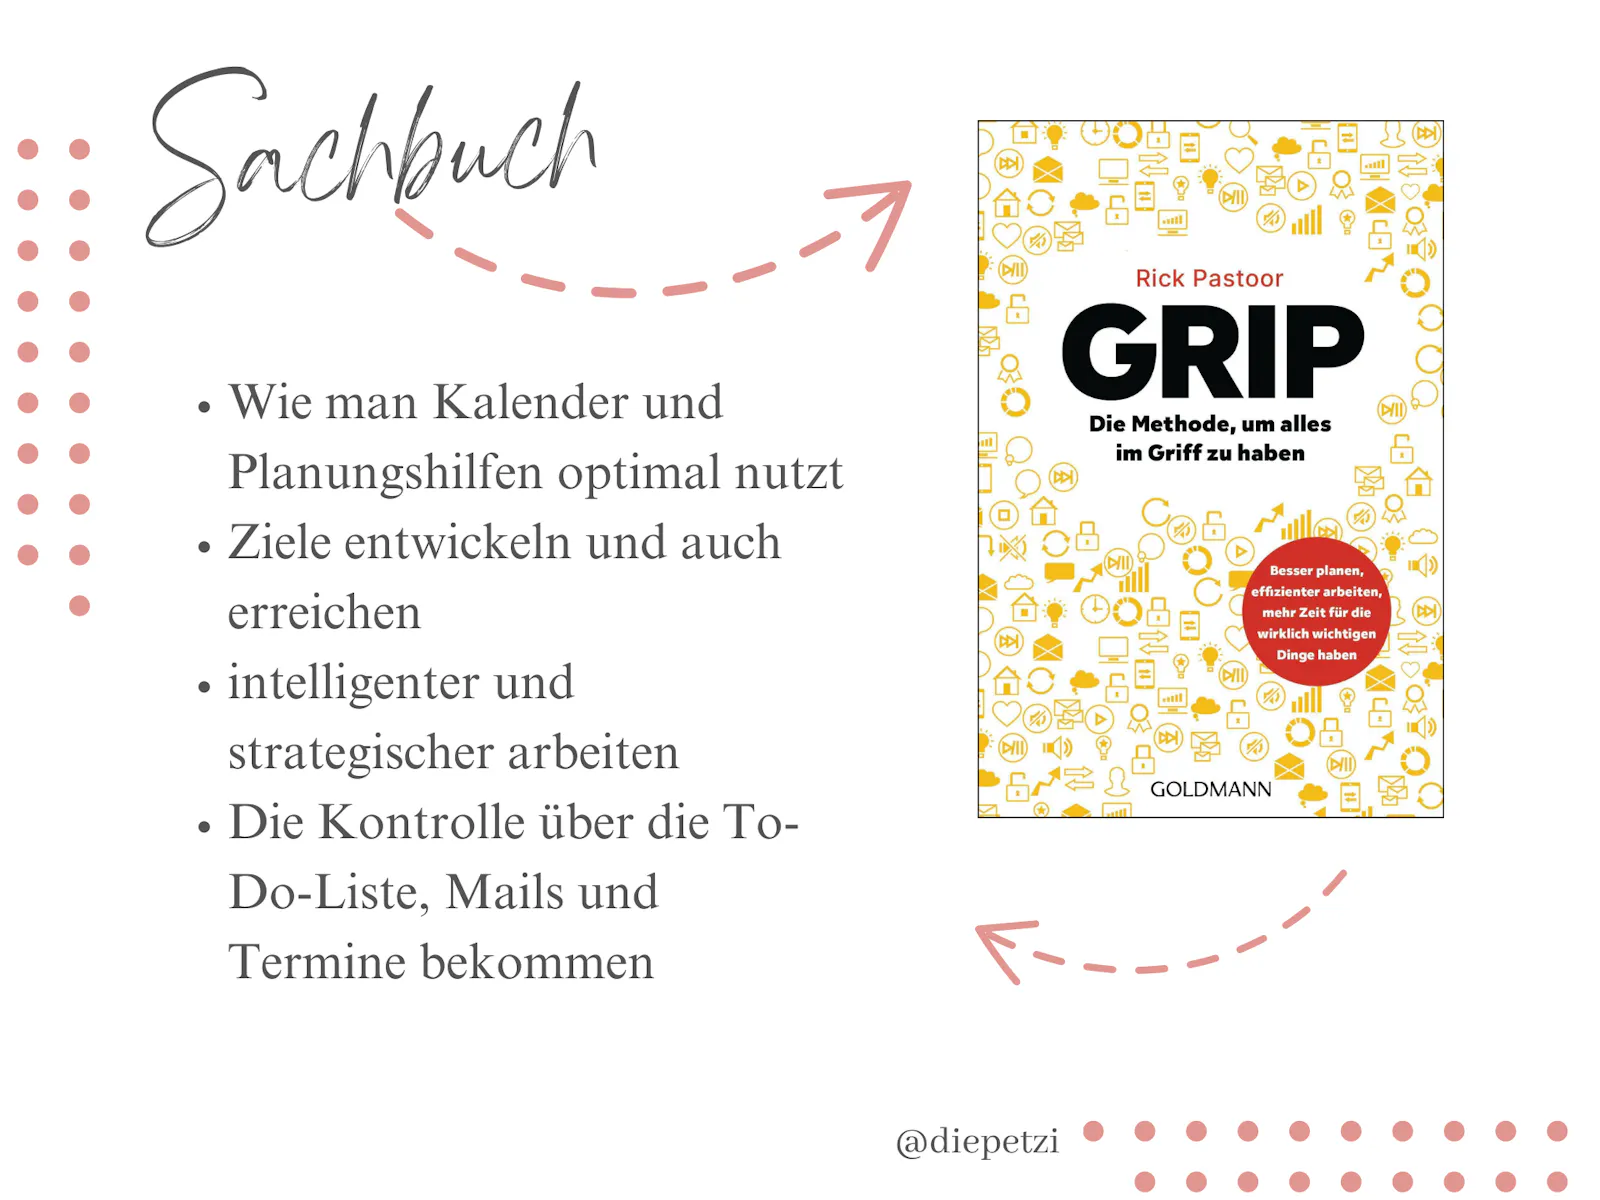 Info-Grafik zum Buch "Grip - Die Methode, um alles im Griff zu haben".